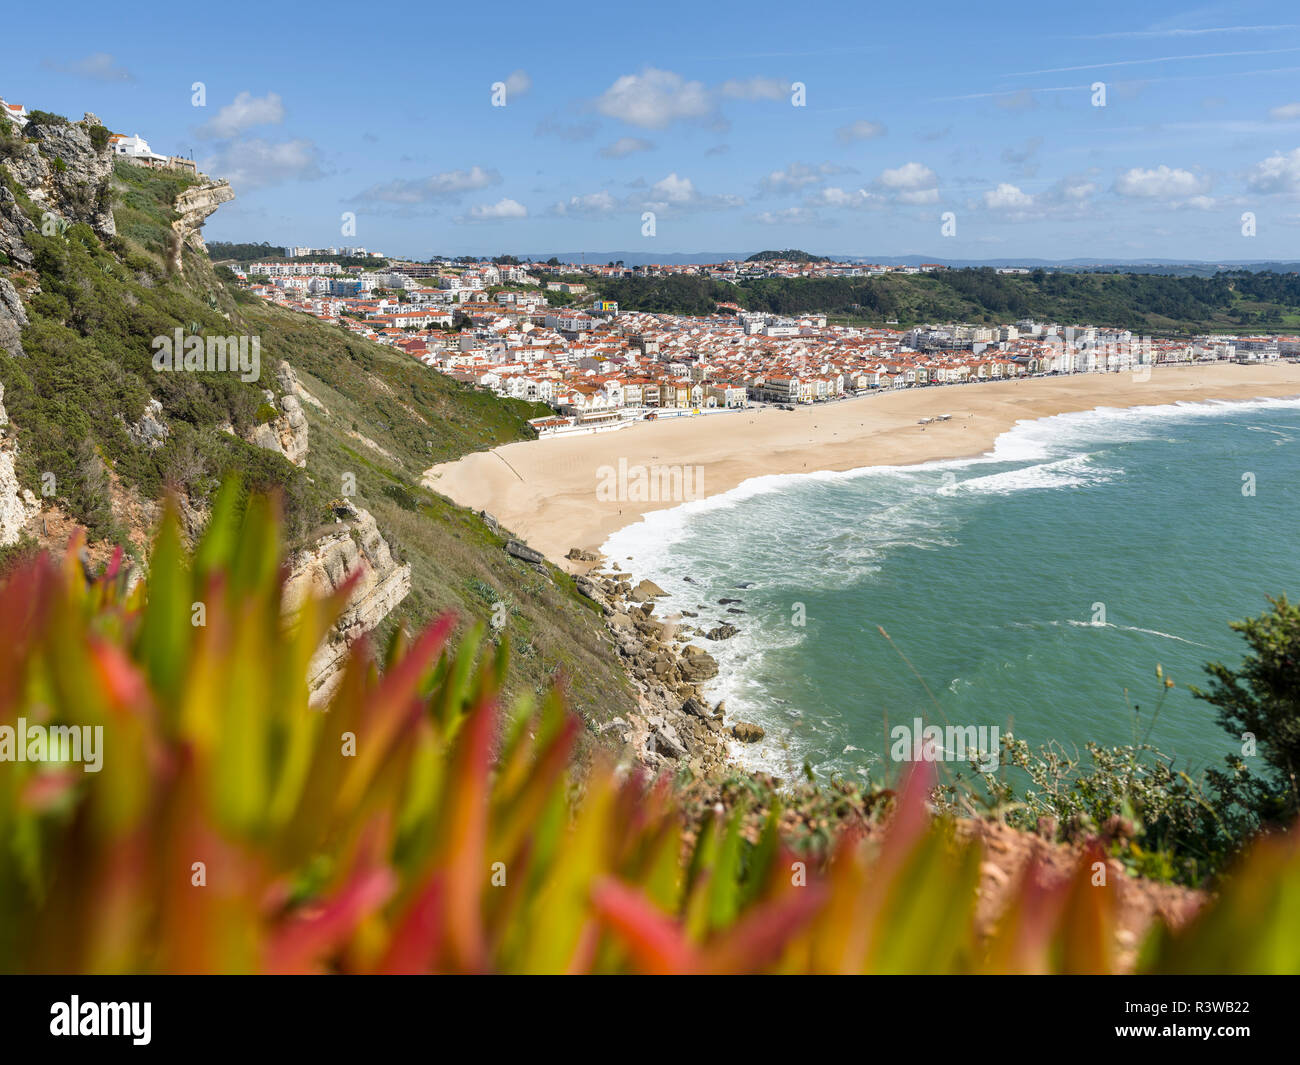 Vue sur la ville et la plage de Sitio. La ville Albufeira sur la côte de l'océan Atlantique. Portugal Banque D'Images